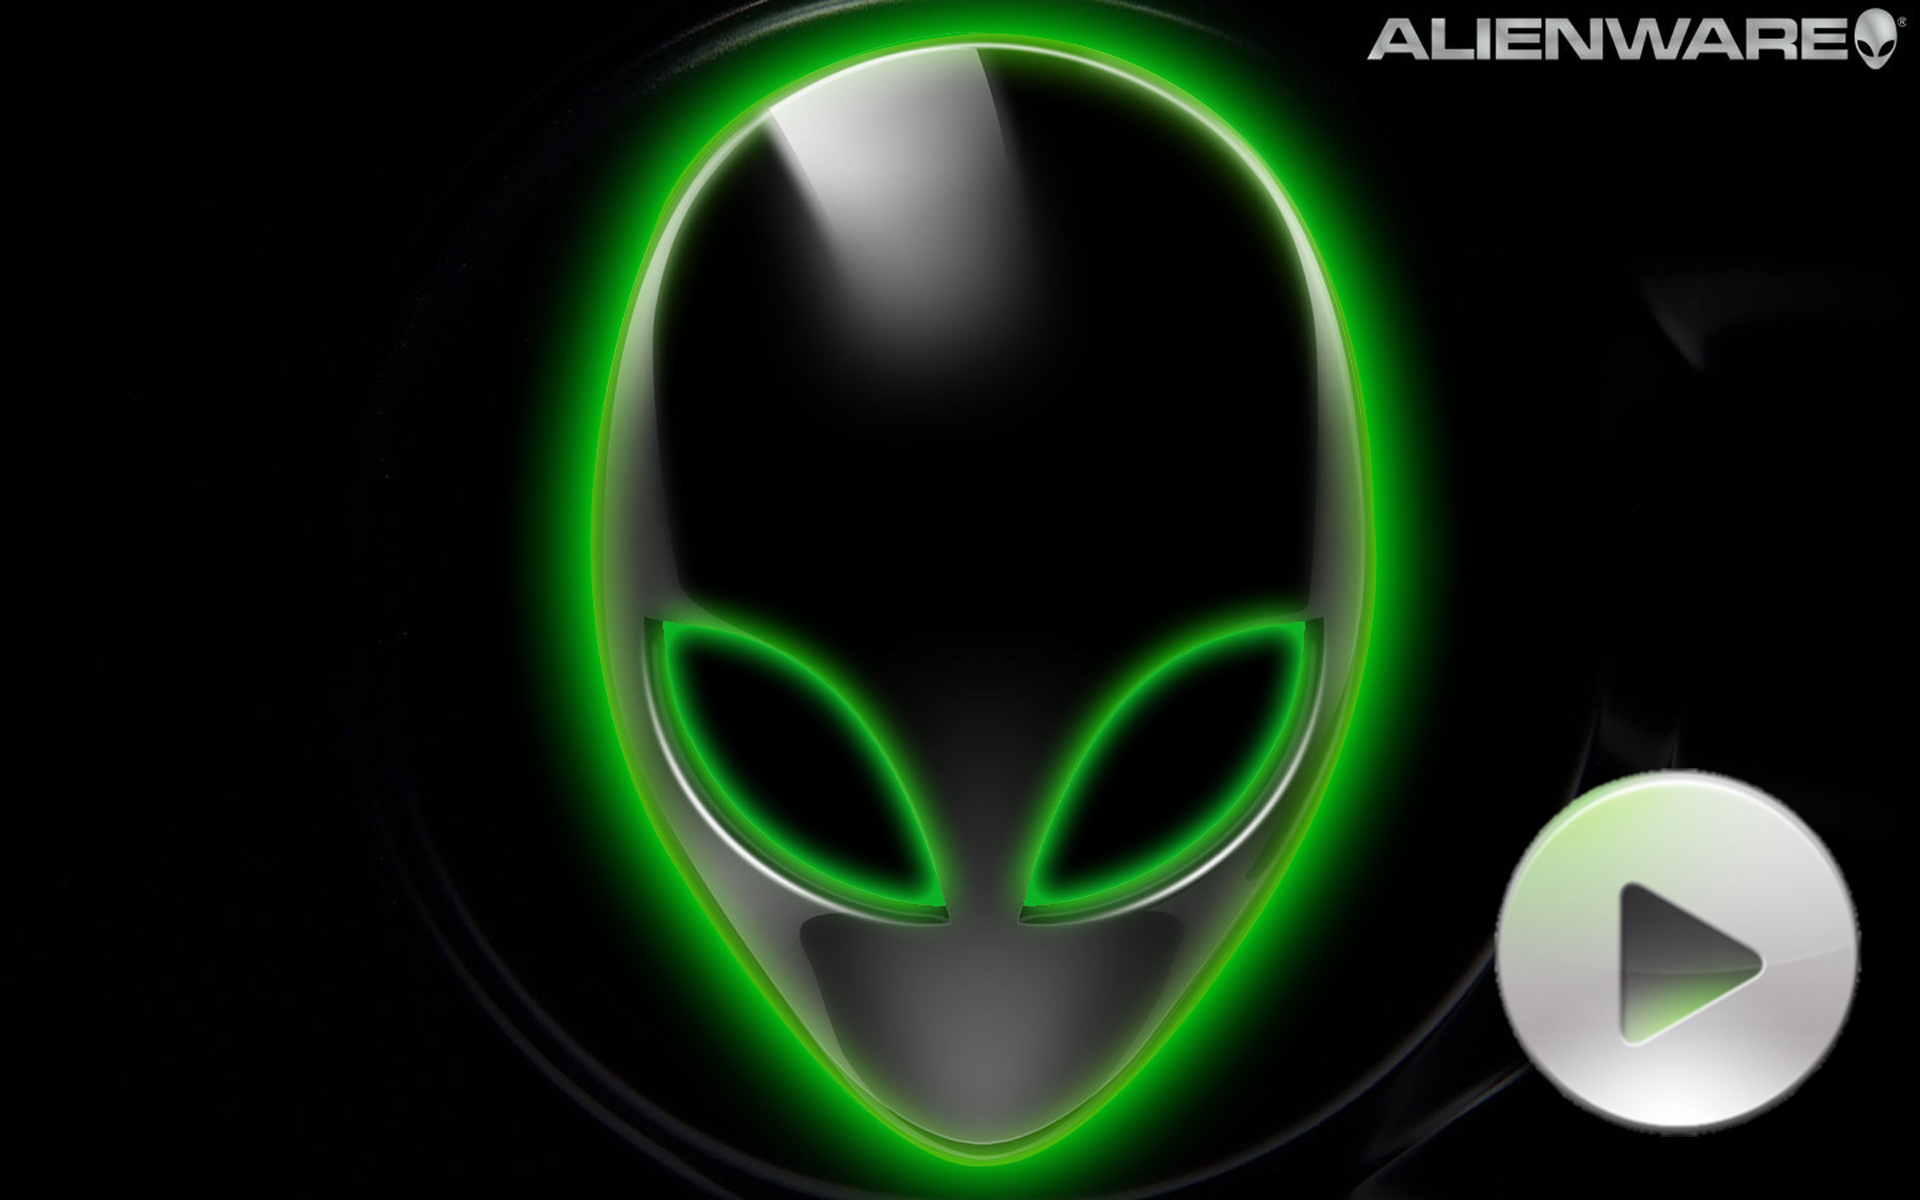 download alienware software windows 10